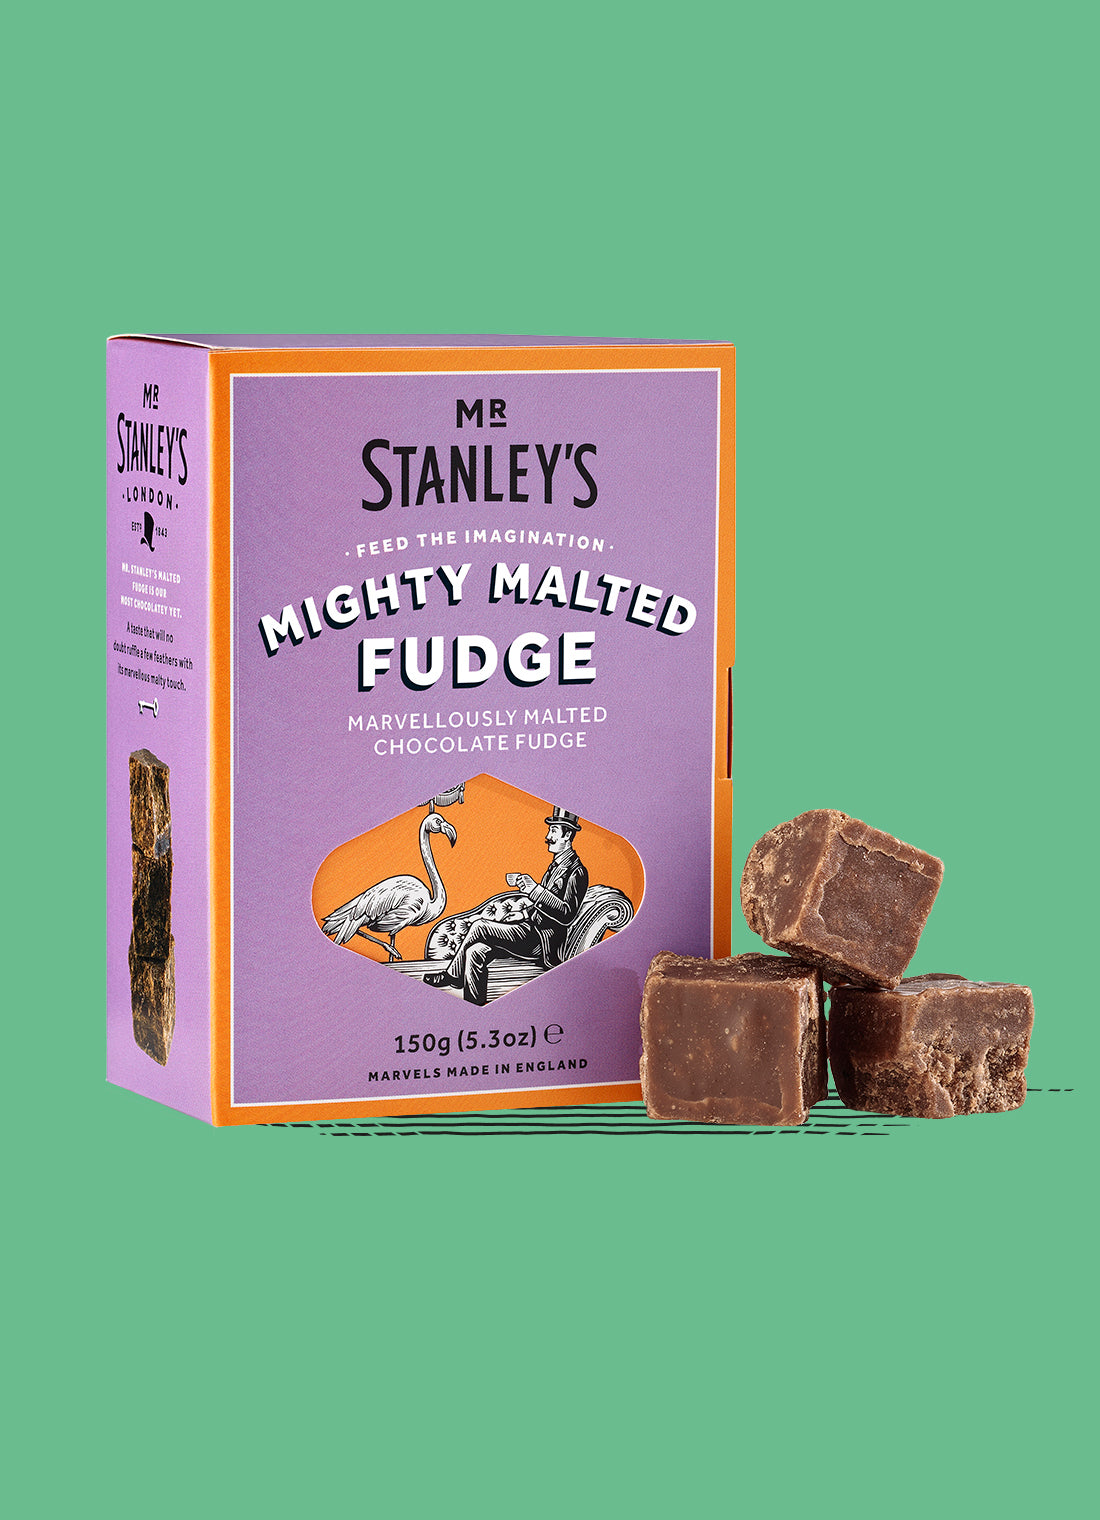 Mr Stanley's Malted Fudge